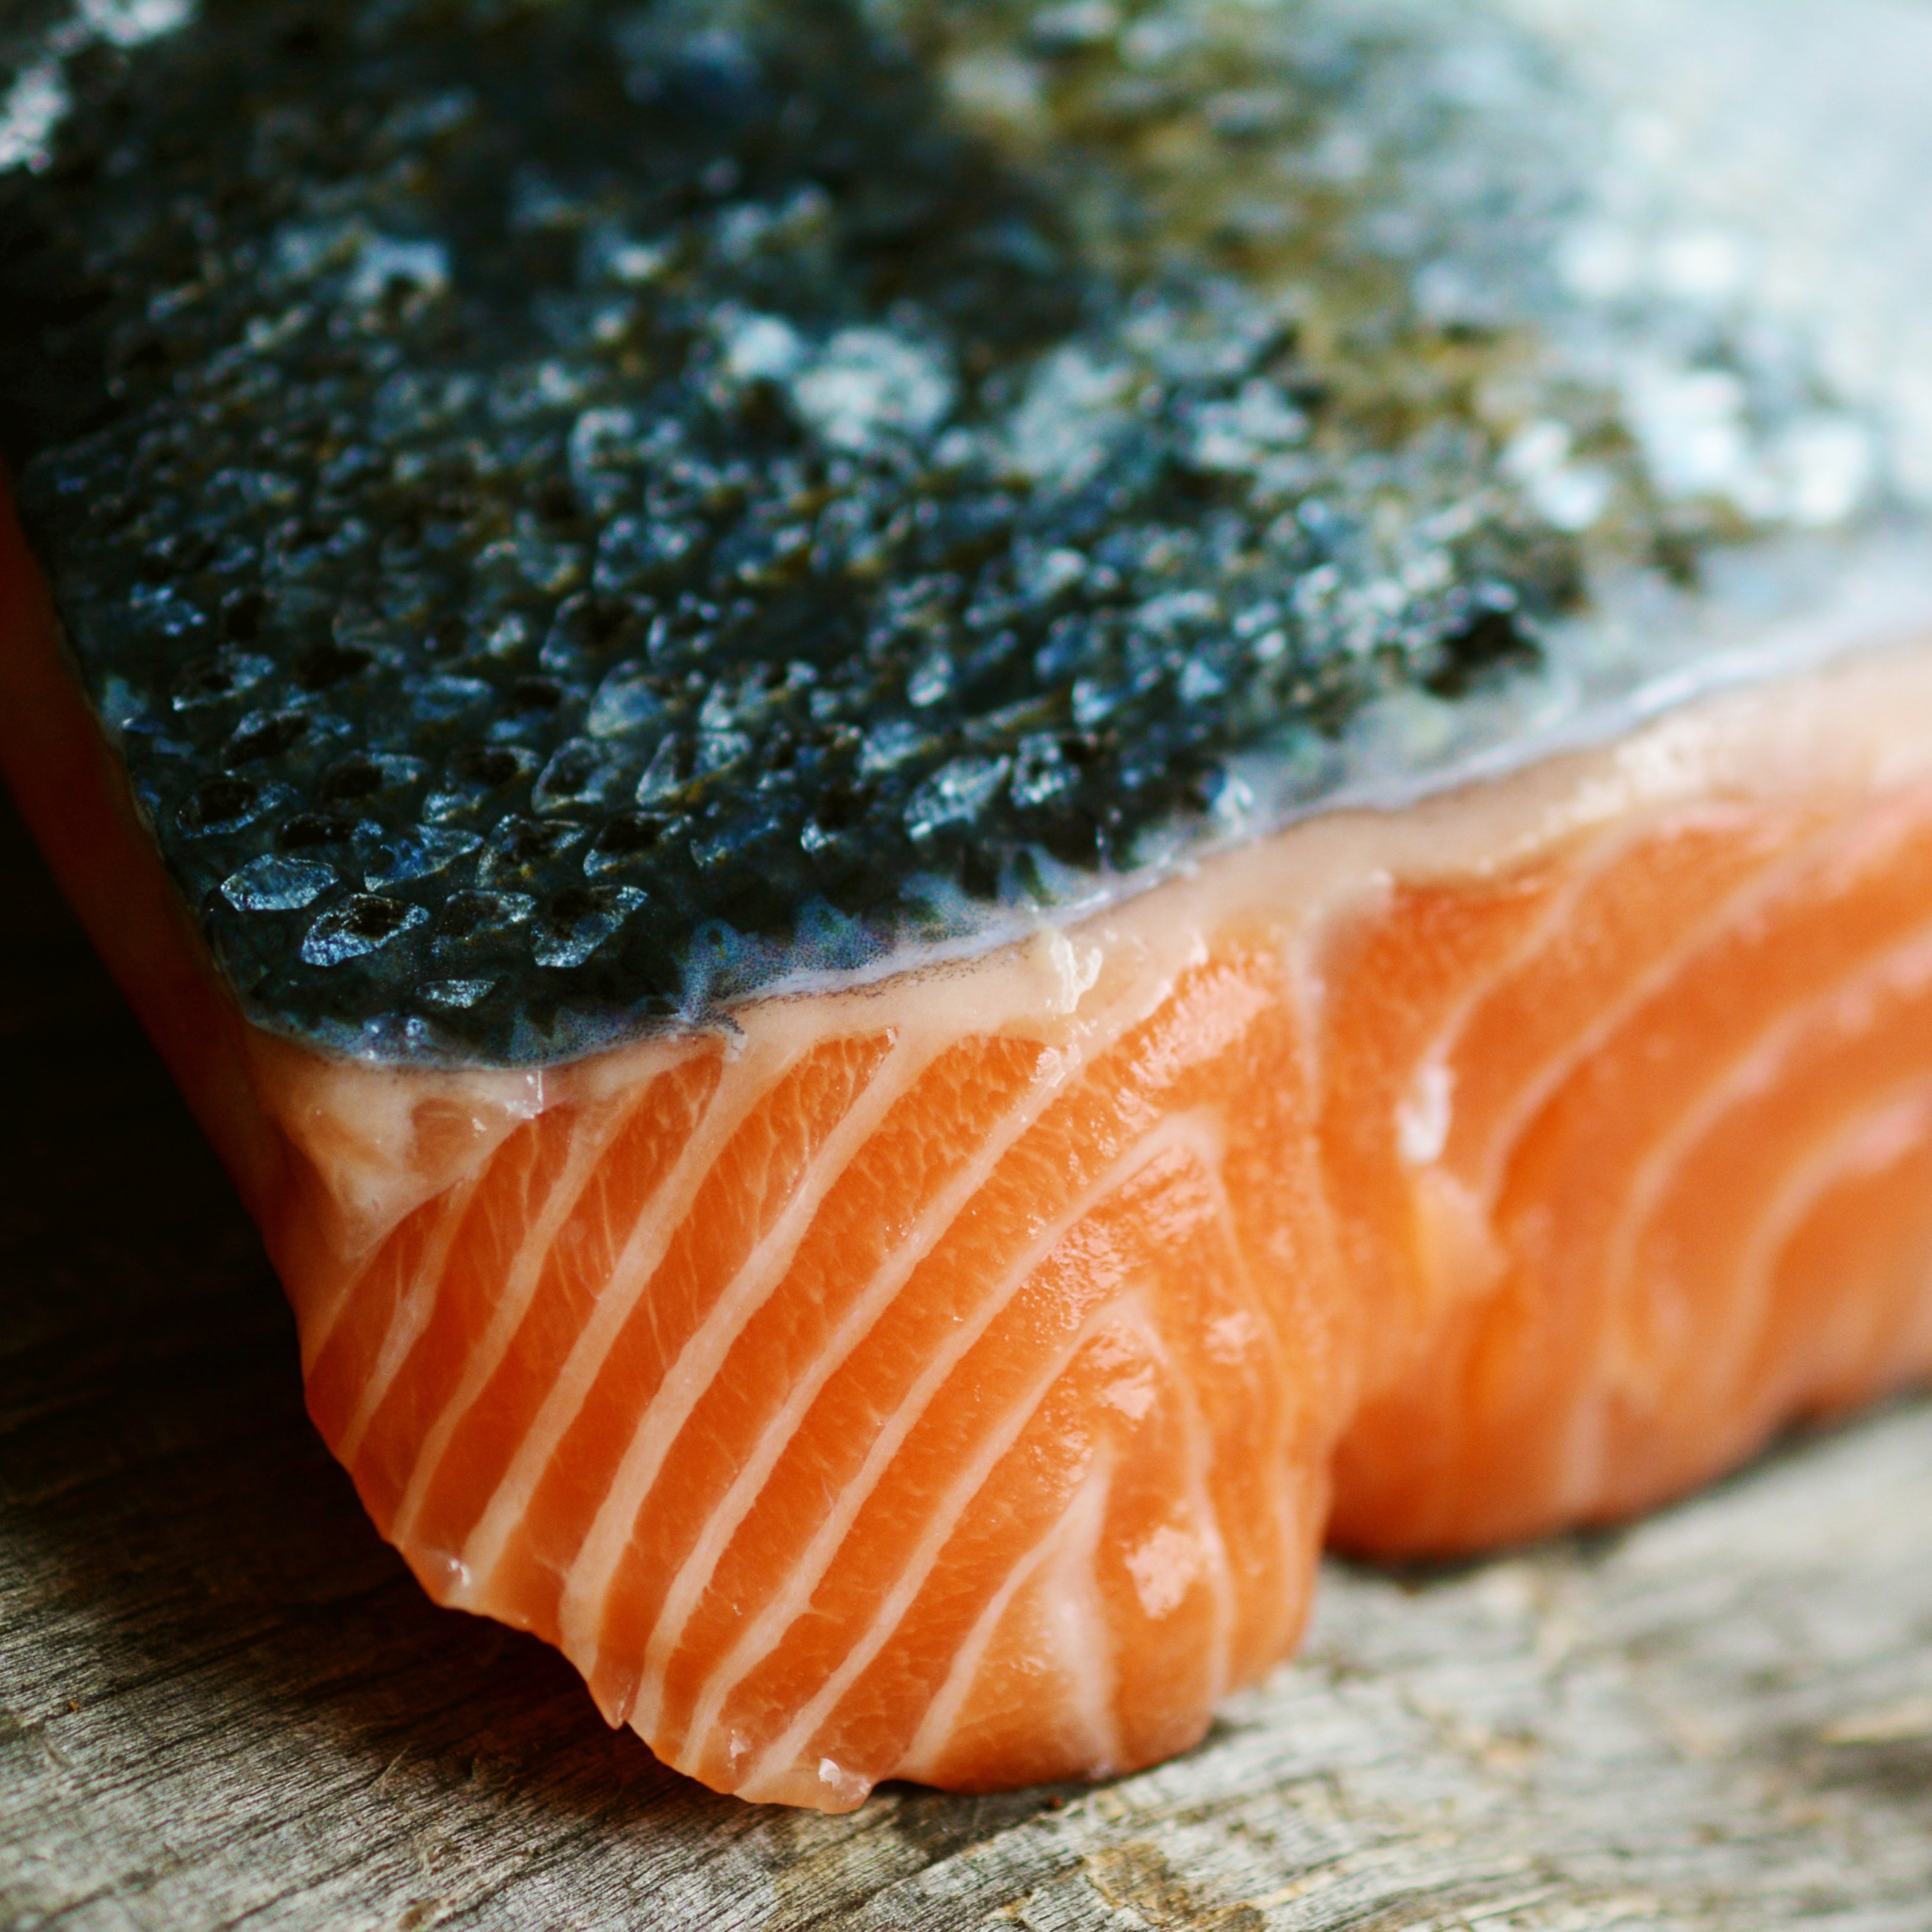 Quant peix pots menjar sense que et perjudiqui la salut?